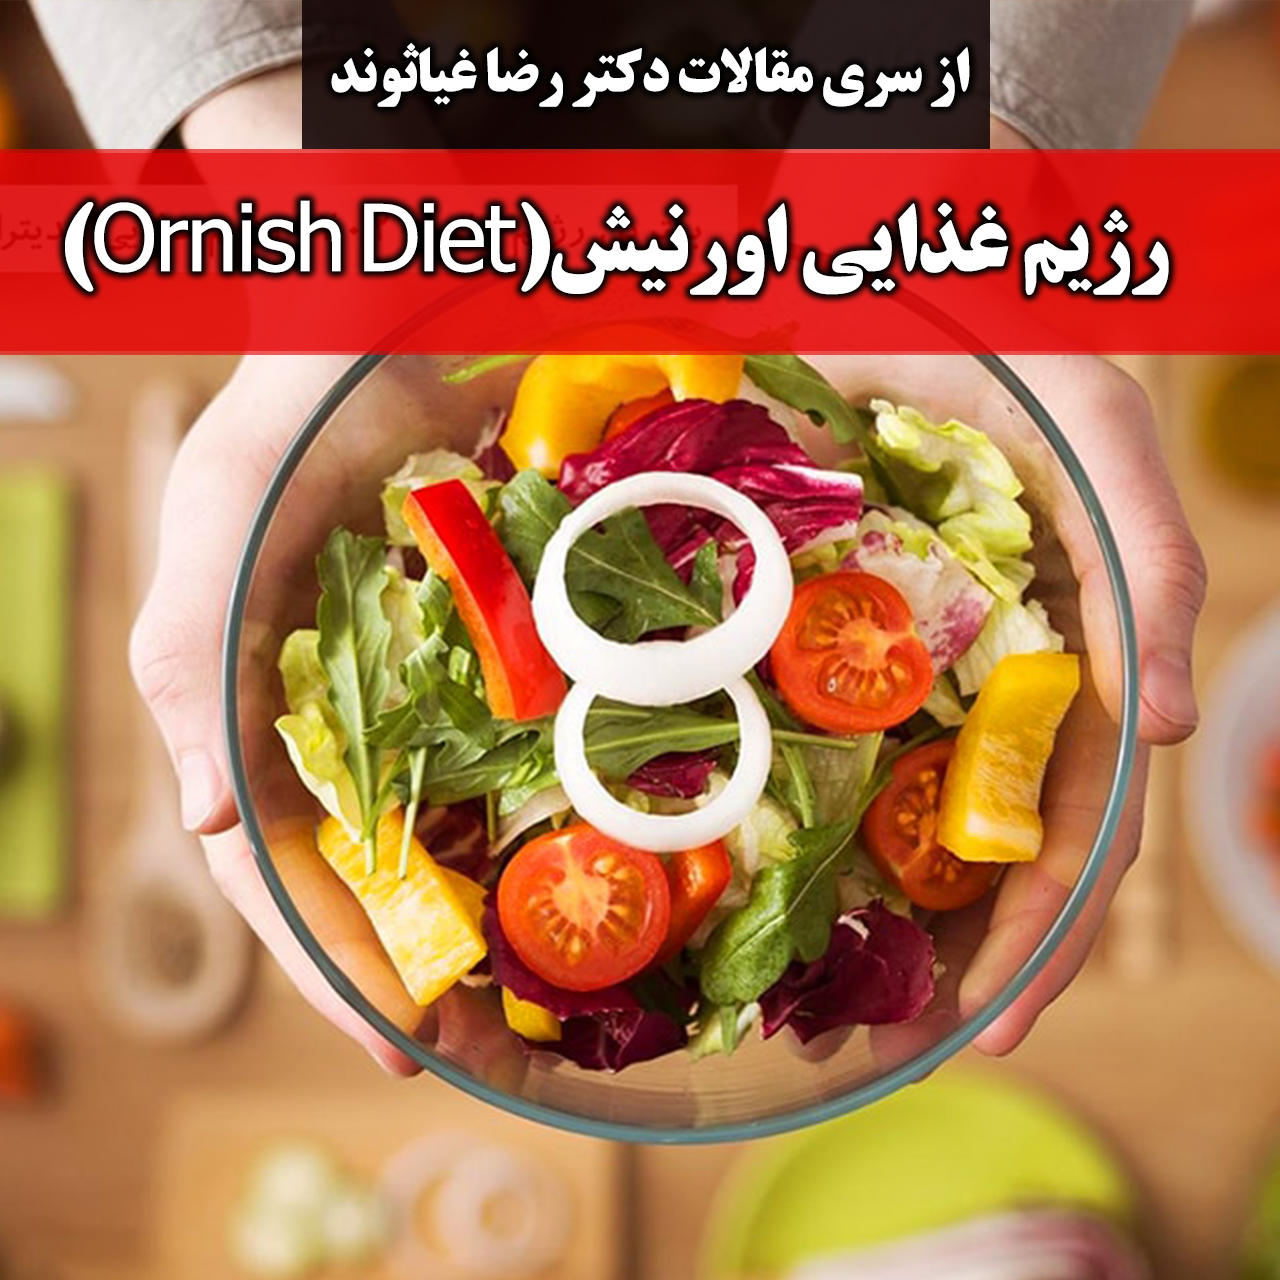 رژیم غذایی اورنیش (Ornish Diet)